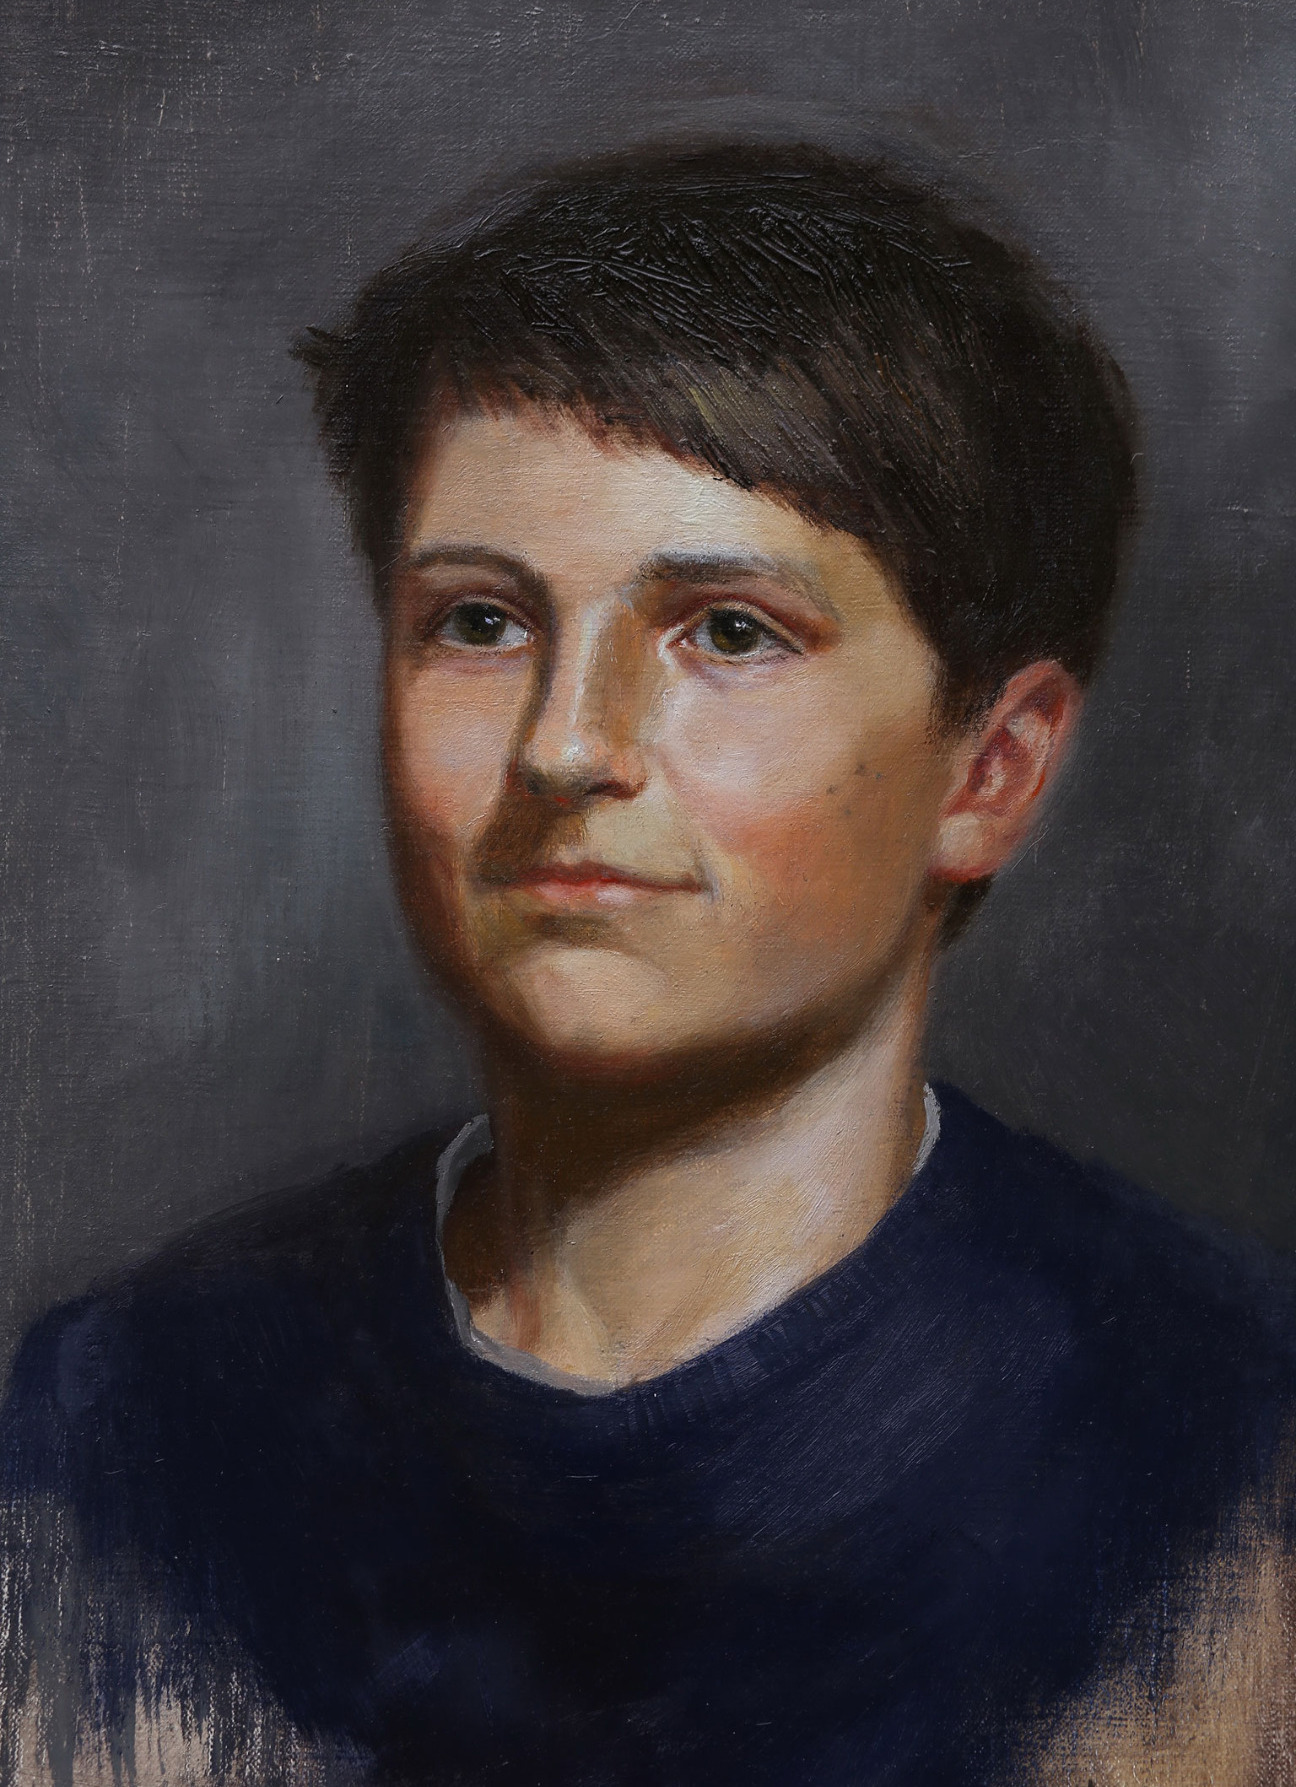 oil portrait painting commission artist's friend's son